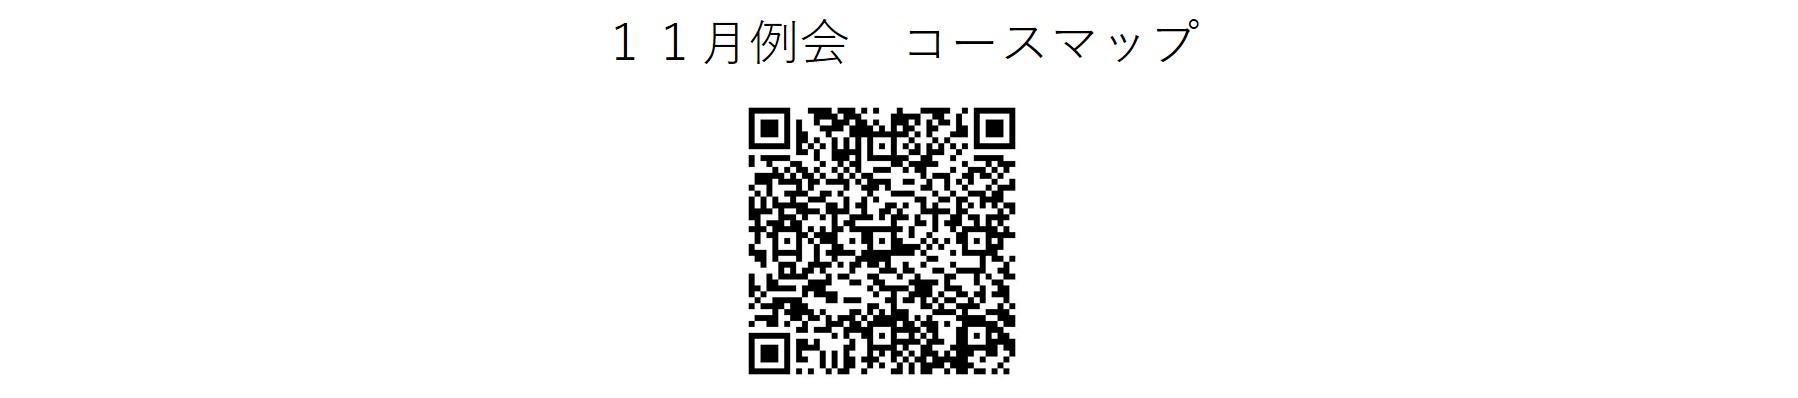 かしわんぽ用11月例会コースマップ.jpg